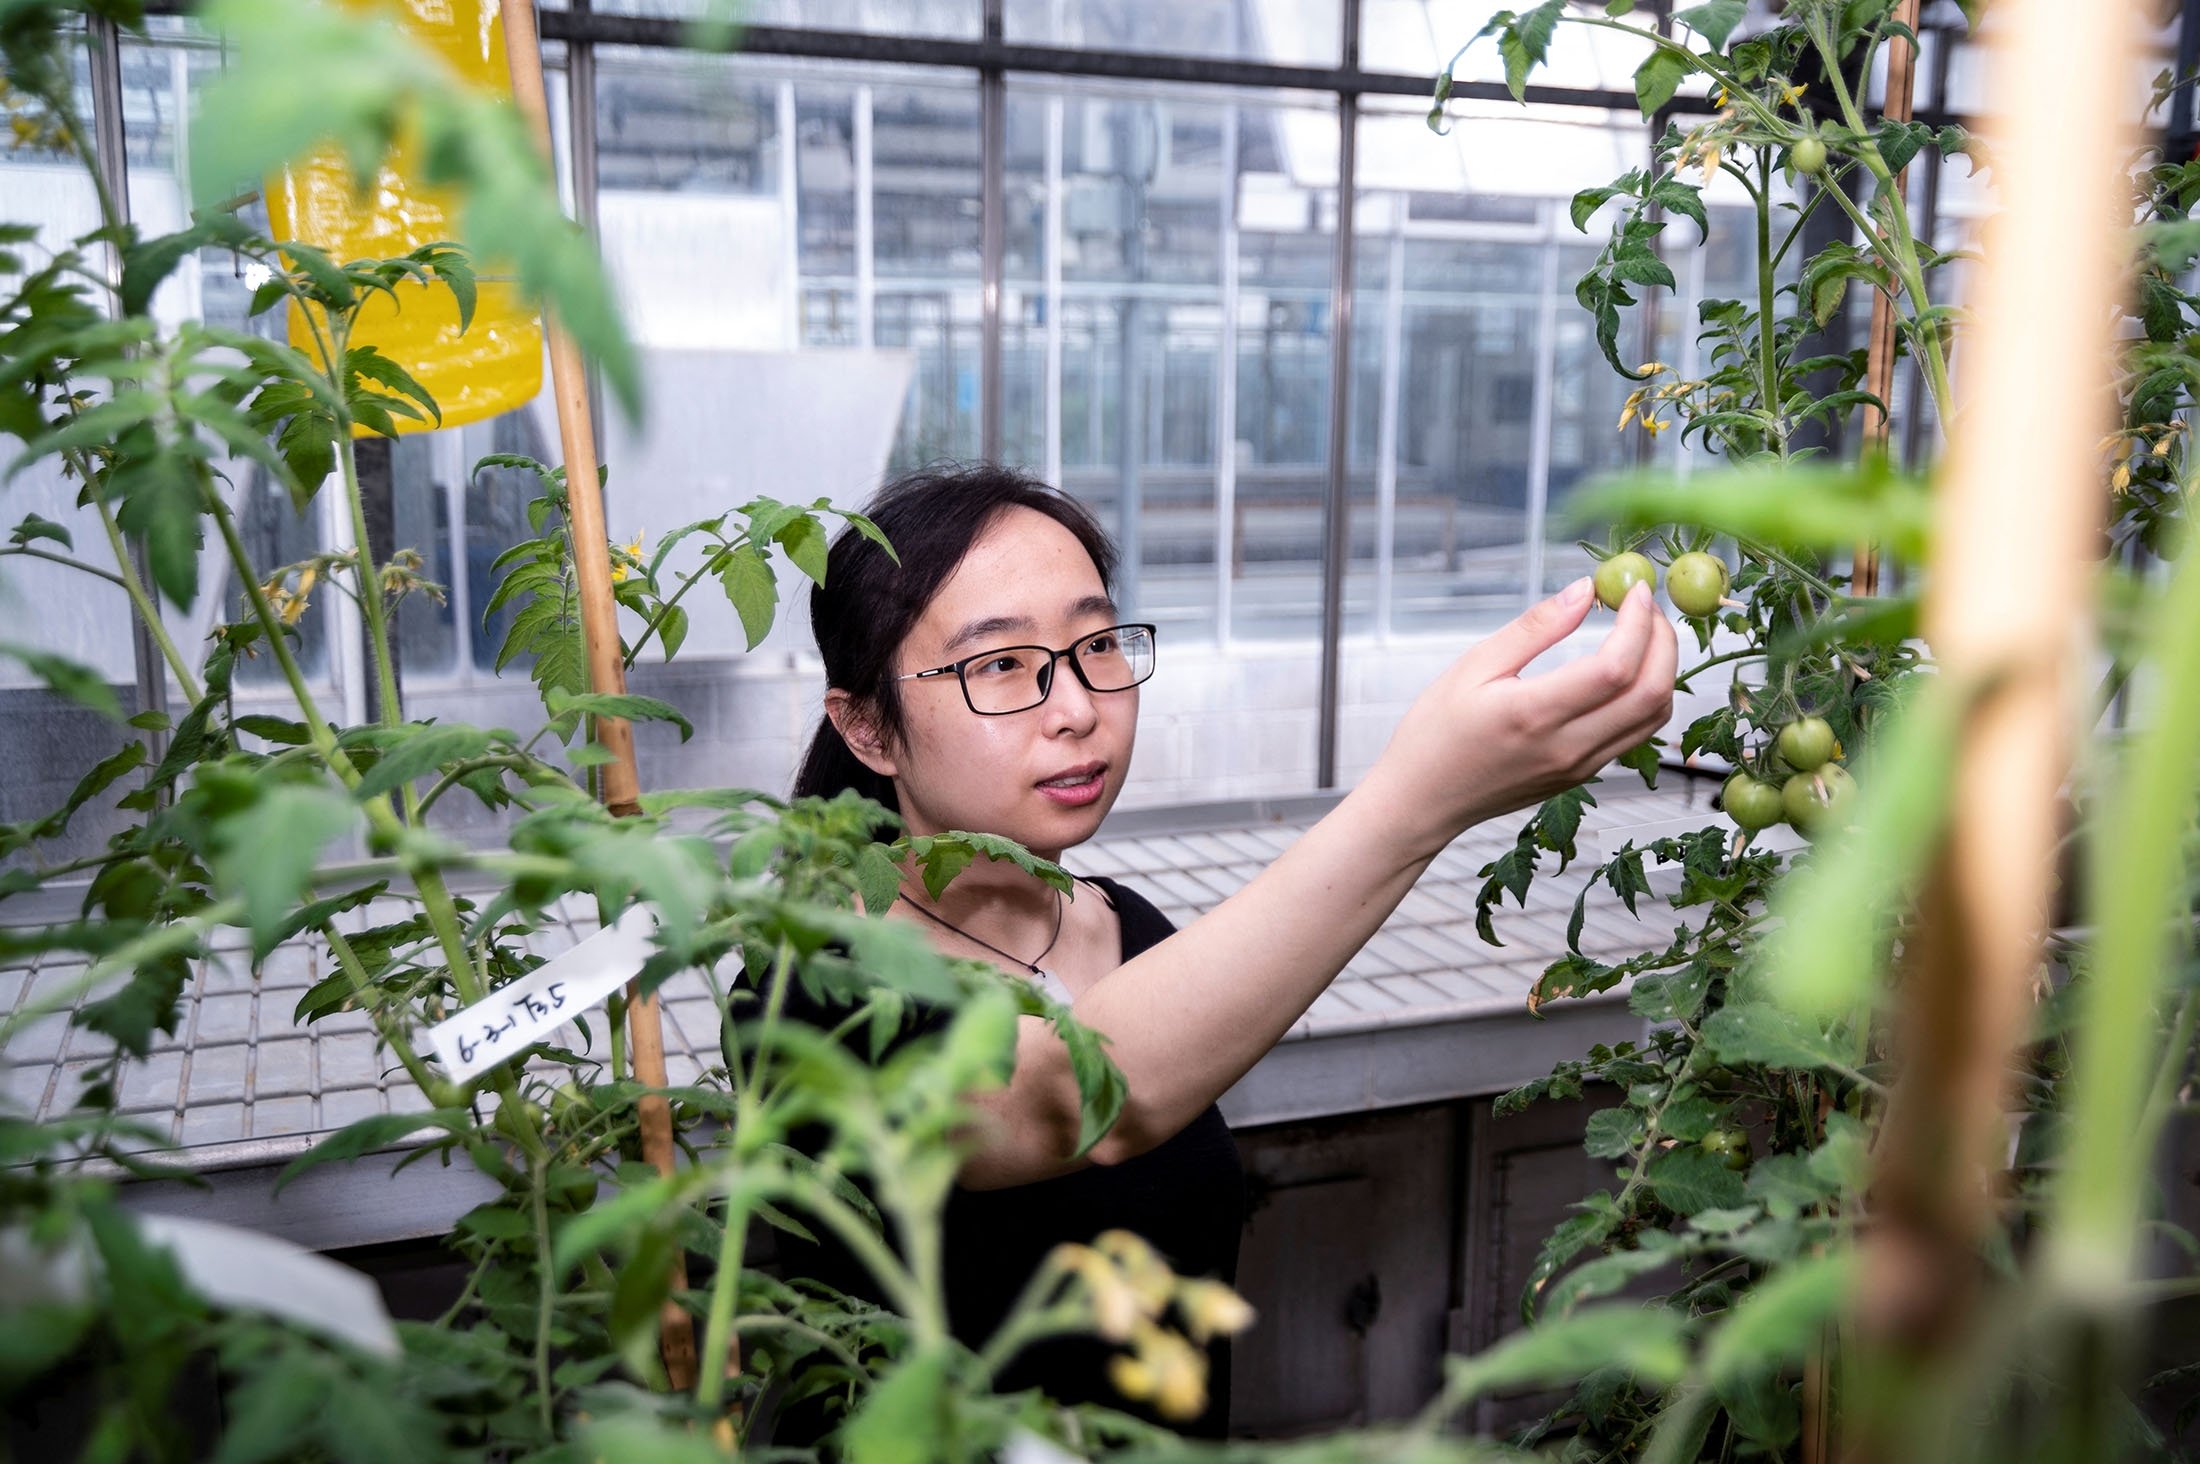 Jie Li, penulis utama studi tentang tomat vitamin D yang diedit gen, memeriksa tanaman tomat di laboratorium di John Innes Center di Norwich, Inggris, 23 Mei 2022. (John Innes Center via Reuters)